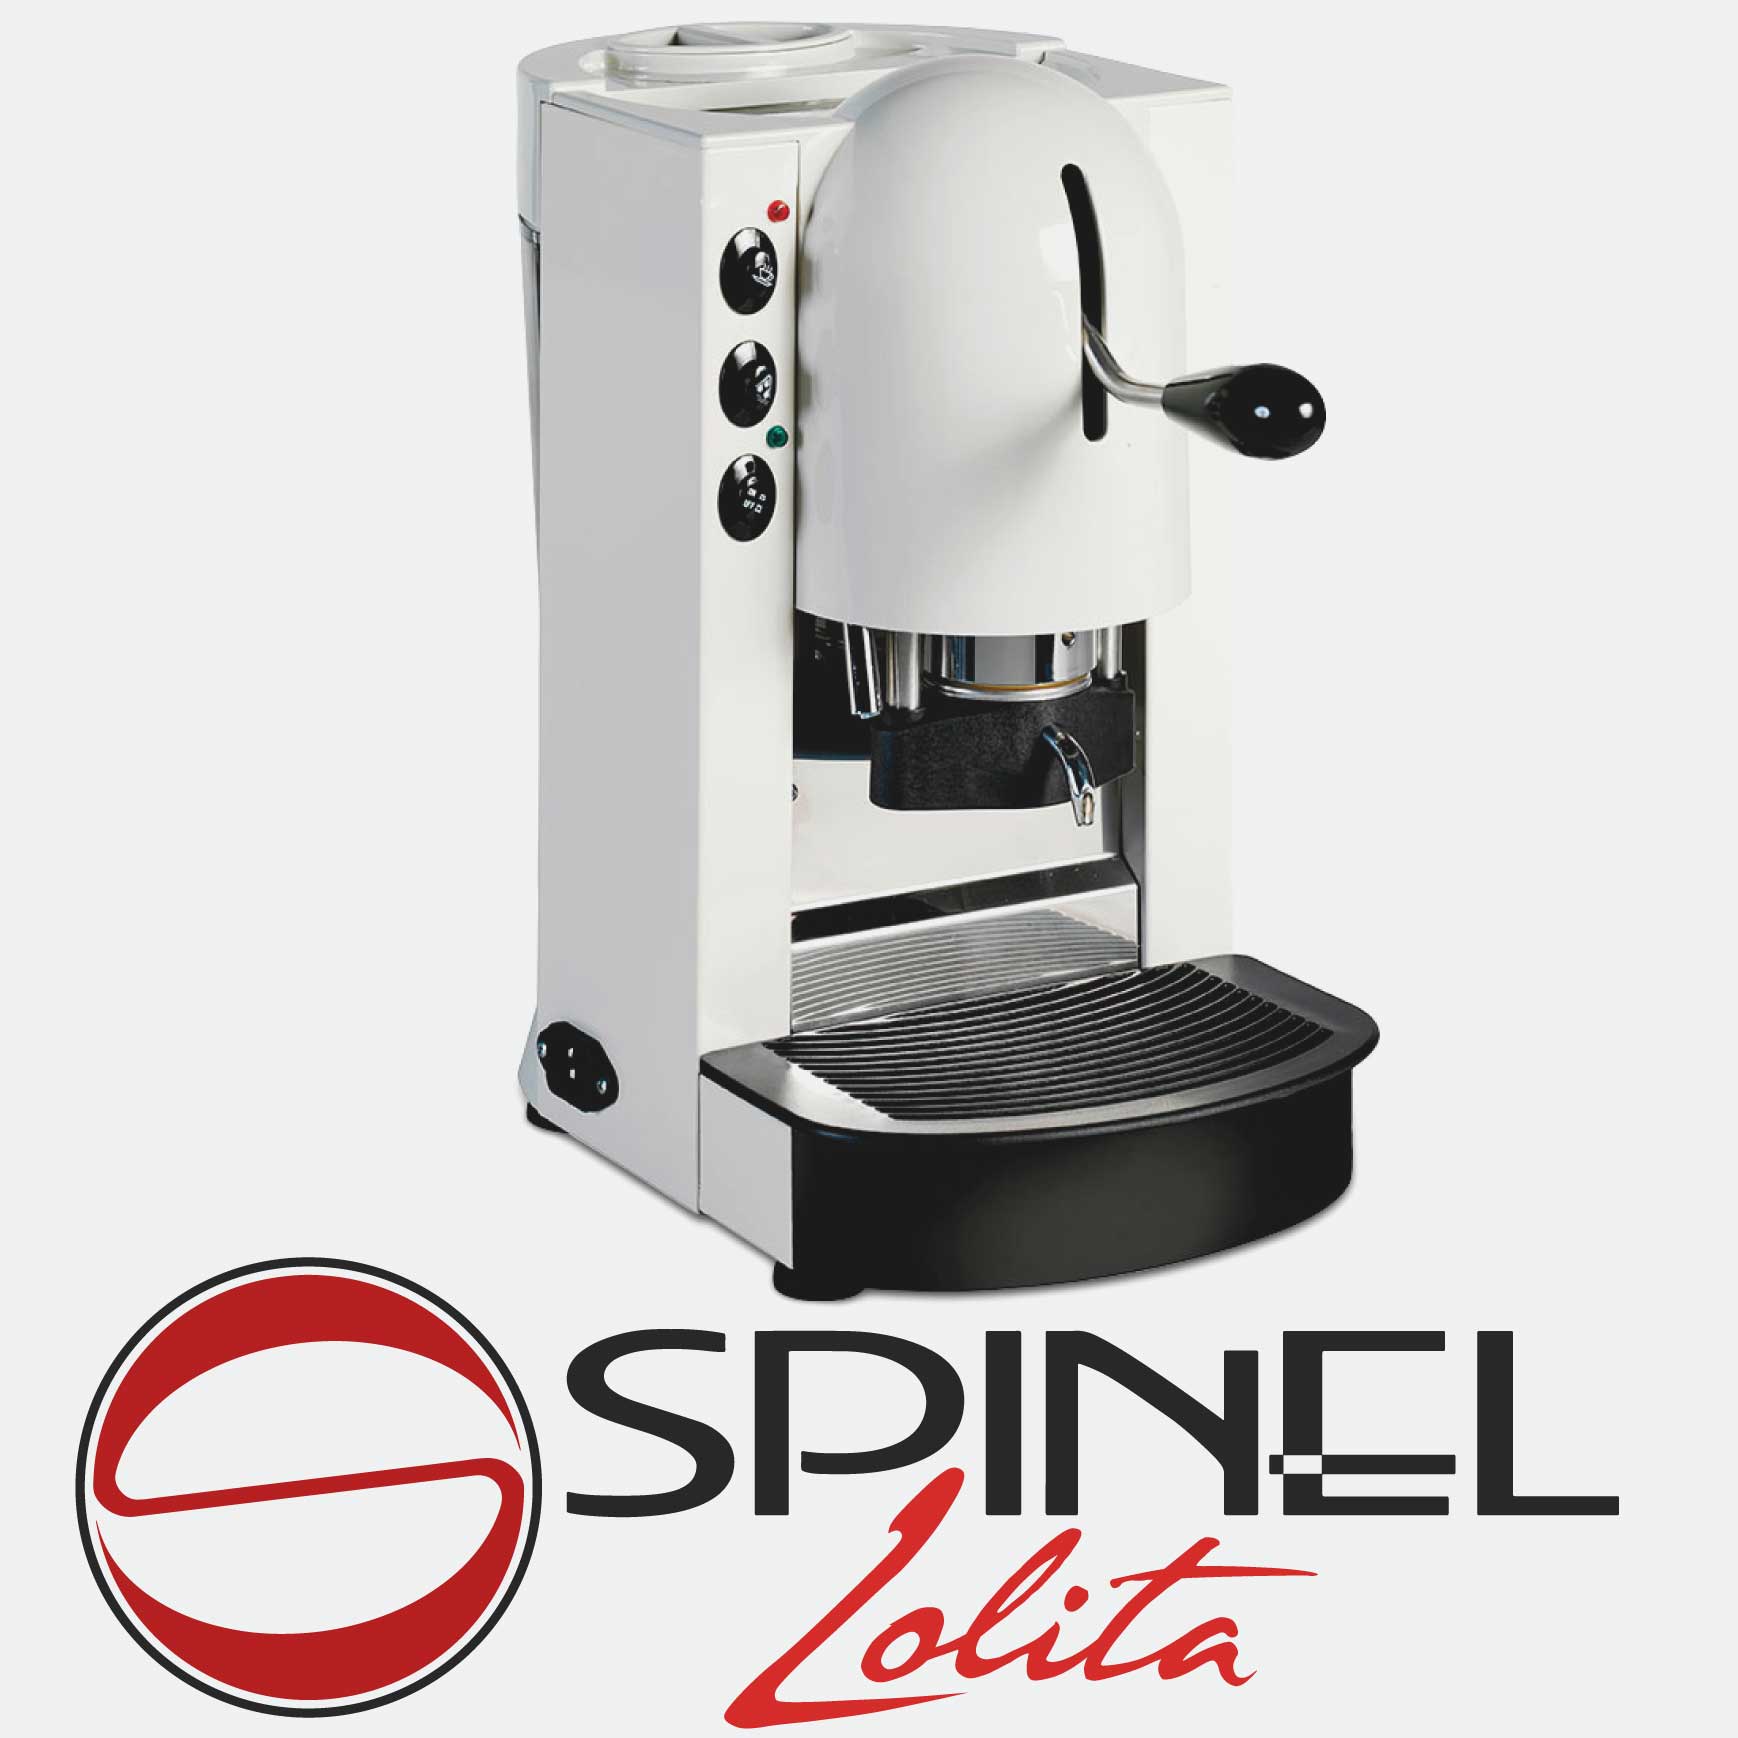 spinel-lolita-macchina-per-espresso-a-cialde-con-doppio-gruppo-e-camera-per-cappuccini-semiprofessionale-semi-professionale-made-in-italy-in-ottone-cialdoro-partner